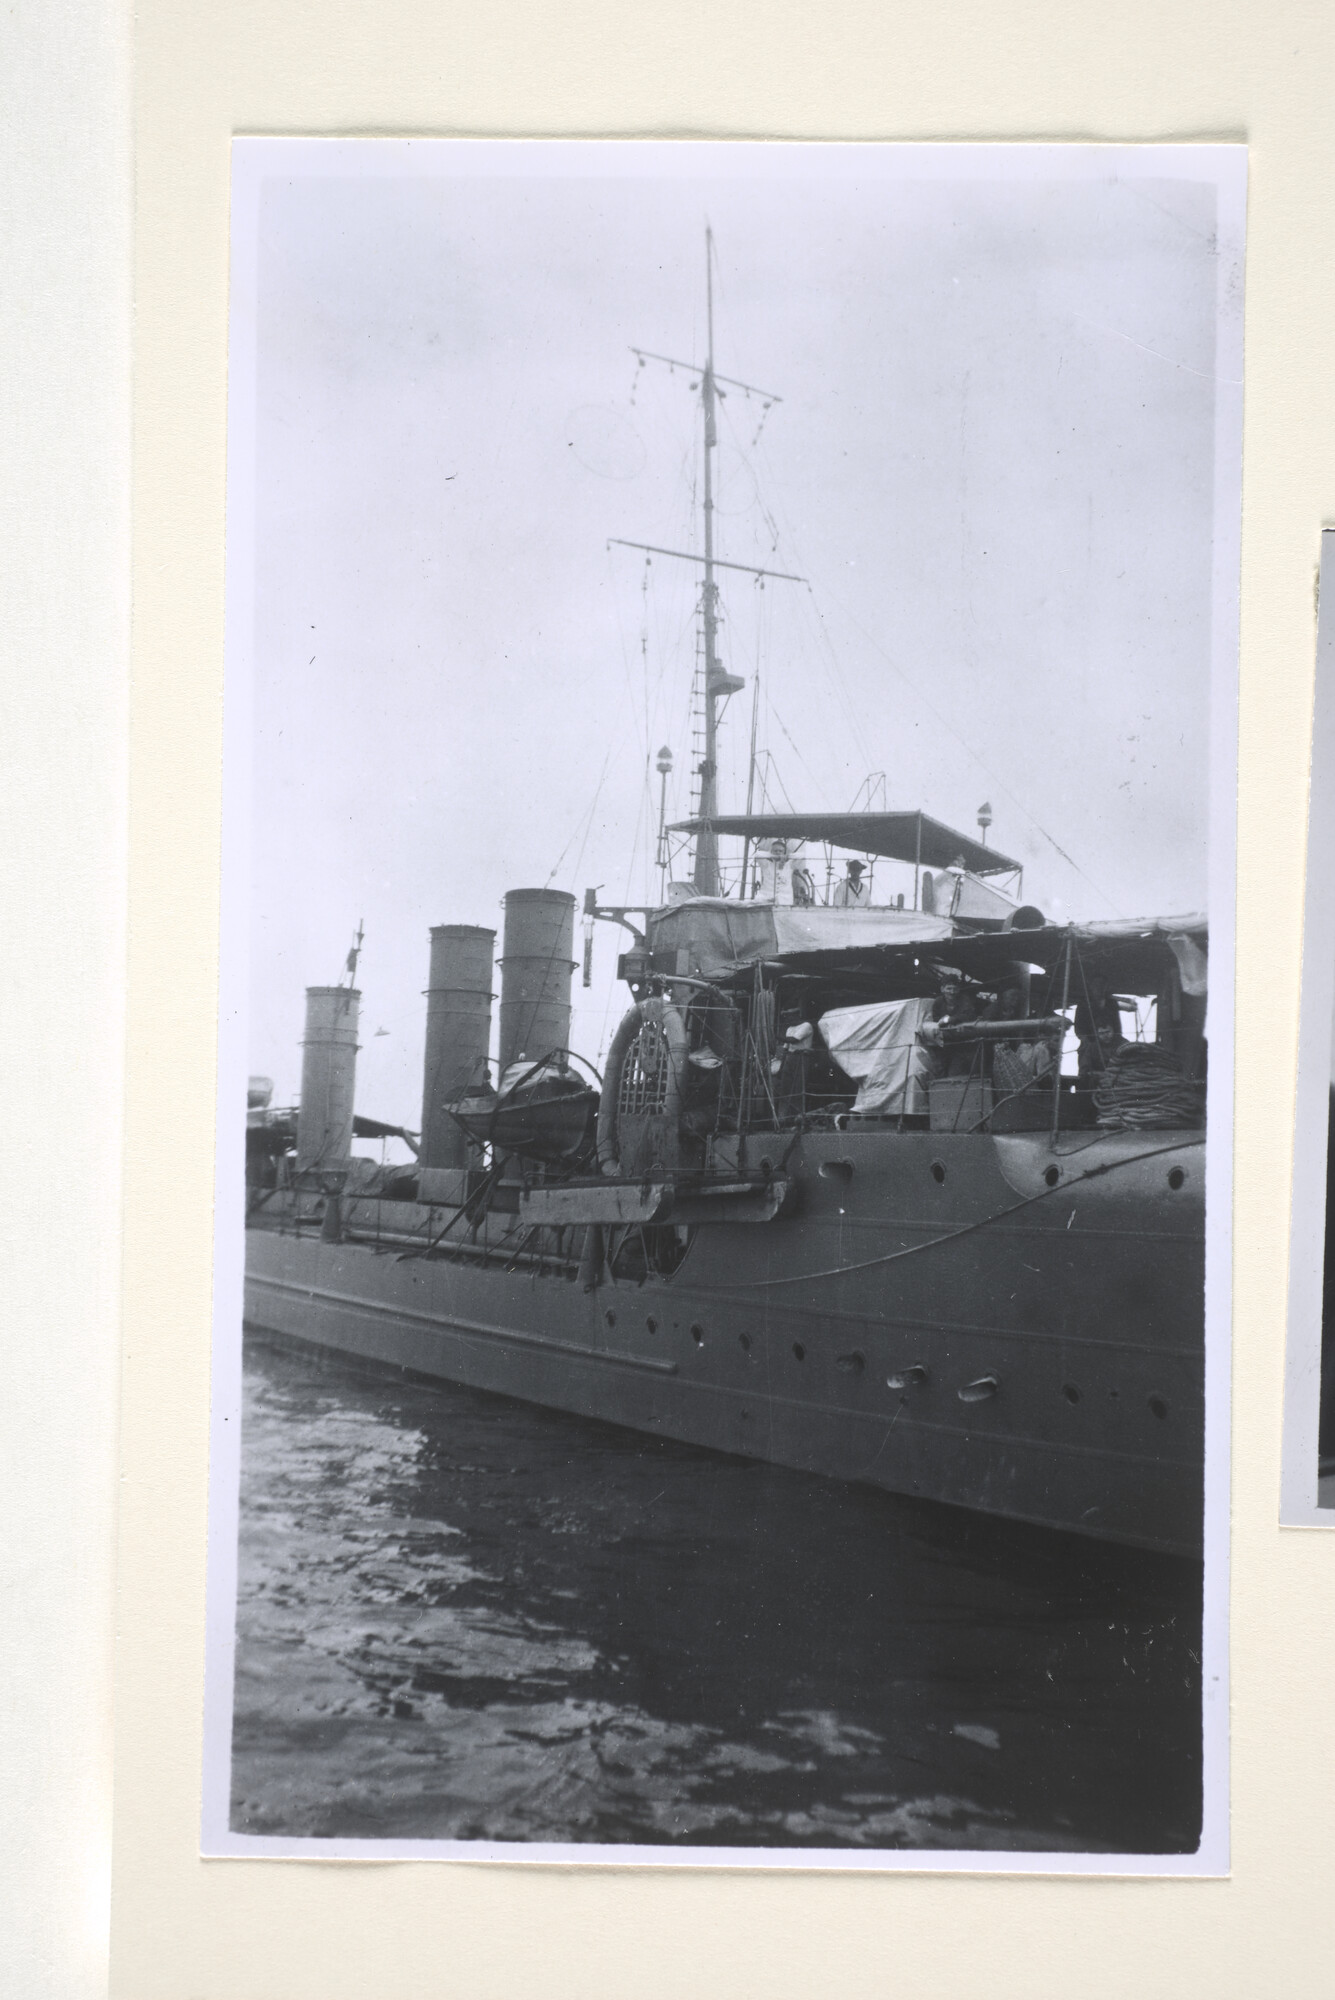 1995.1372; Reproductiefoto's van de torpedobootjager Hr.Ms. 'Vos'; fotoreportage